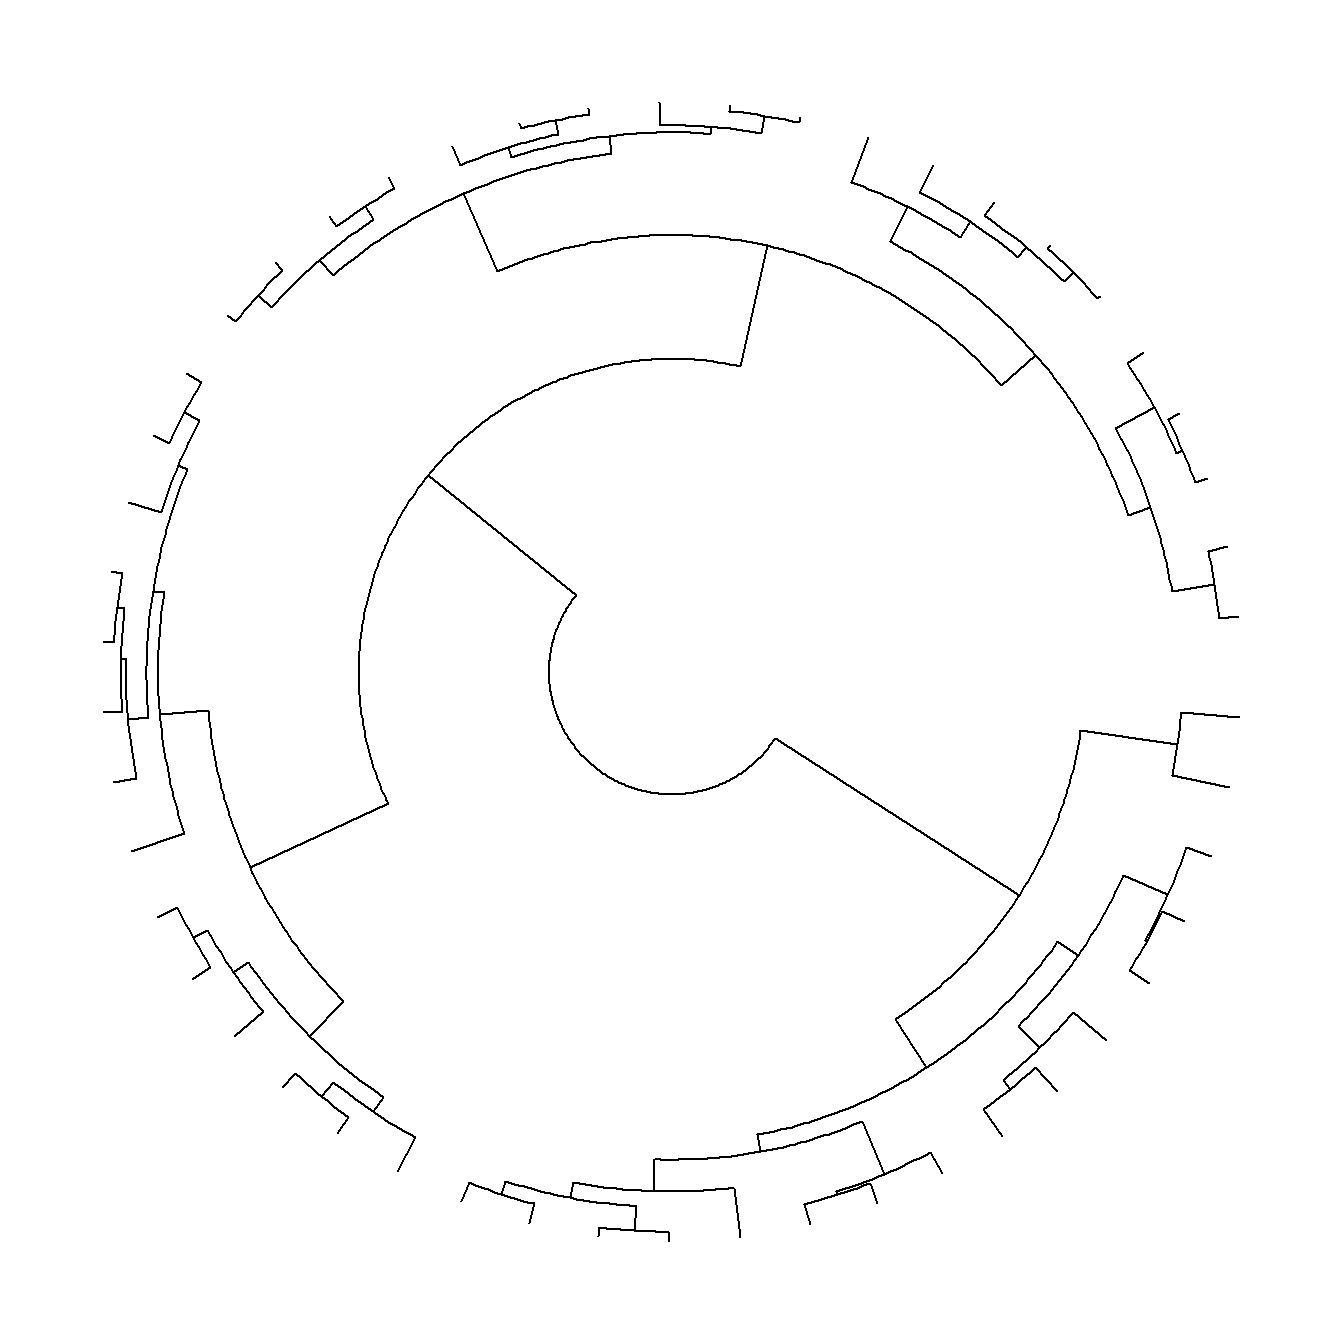 Dendrograma radial en R sin etiquetas